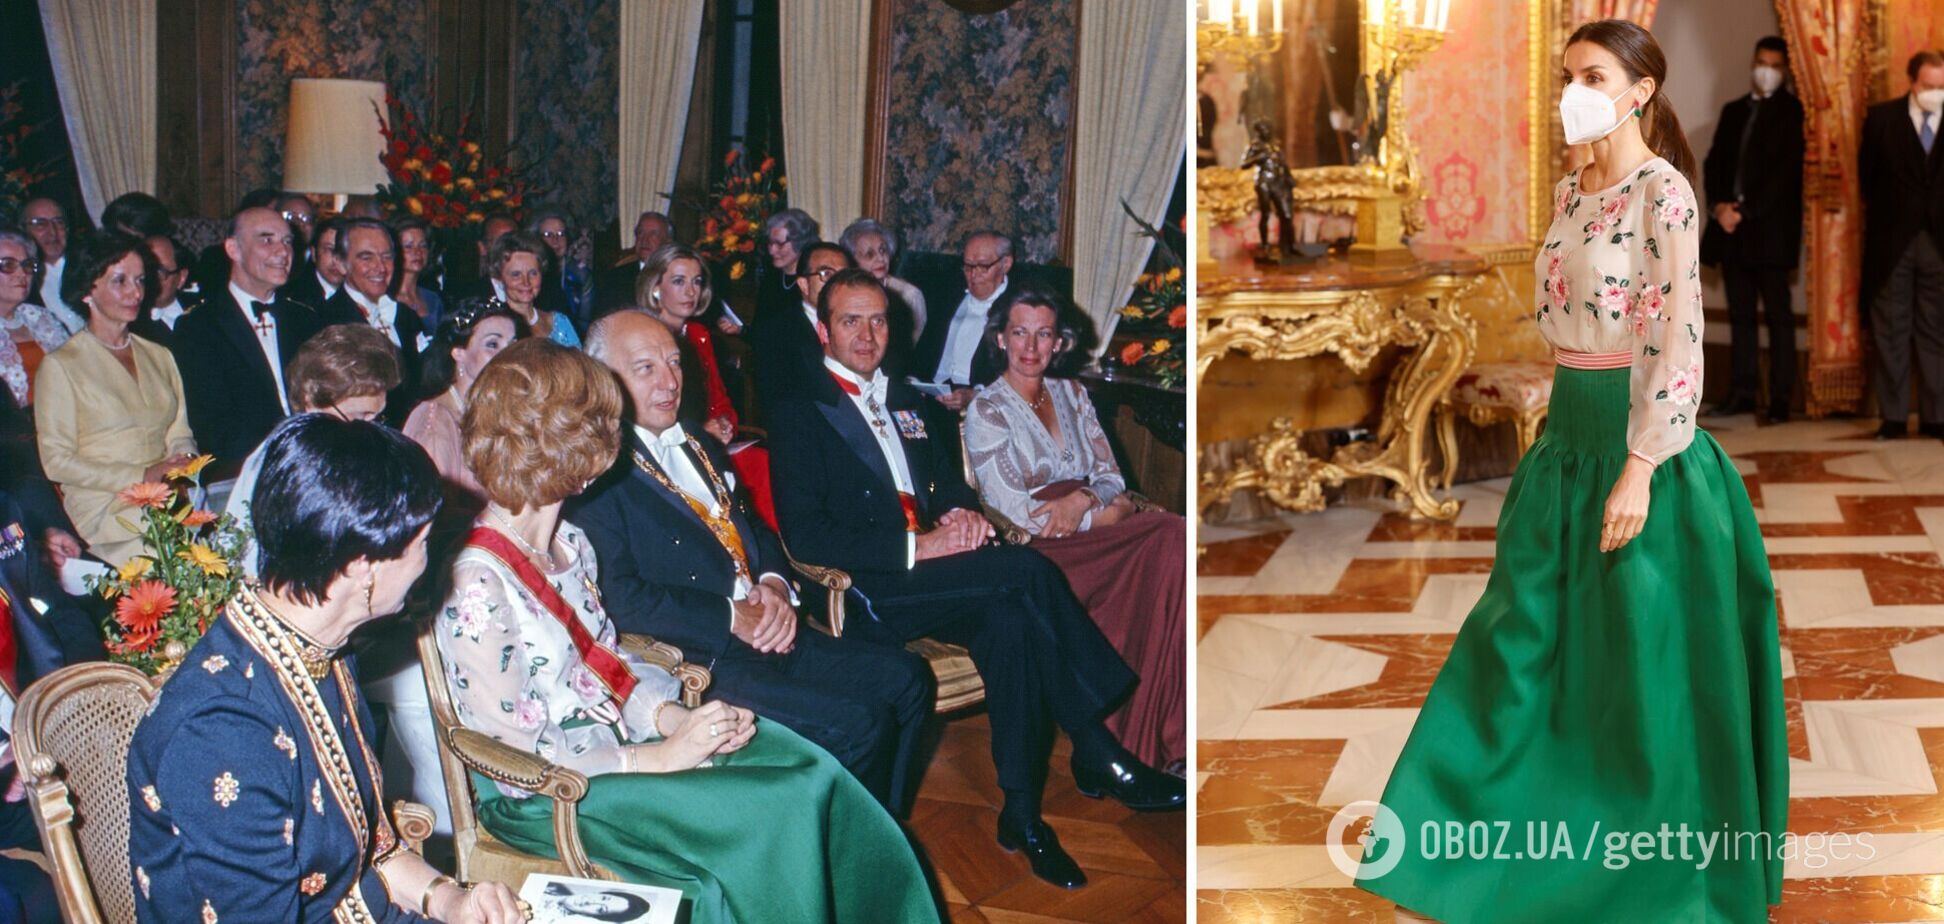 Королева Испании Летиция вышла на публику в платье 1977 года. Фото тогда и теперь